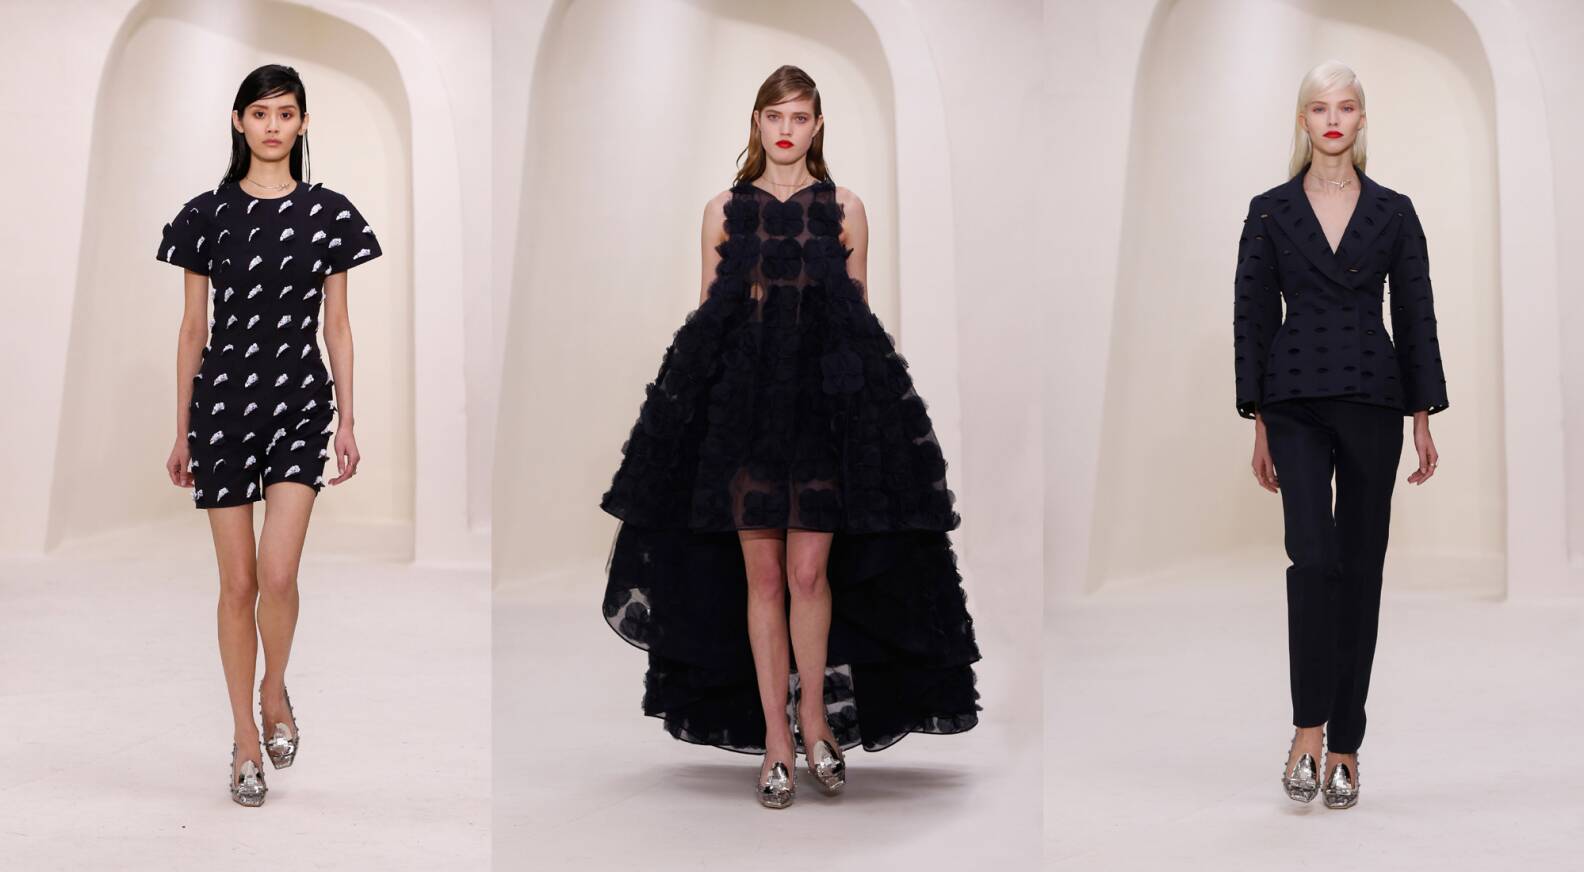 Показ коллекции Высокой моды Dior весналето  2014  LVMH